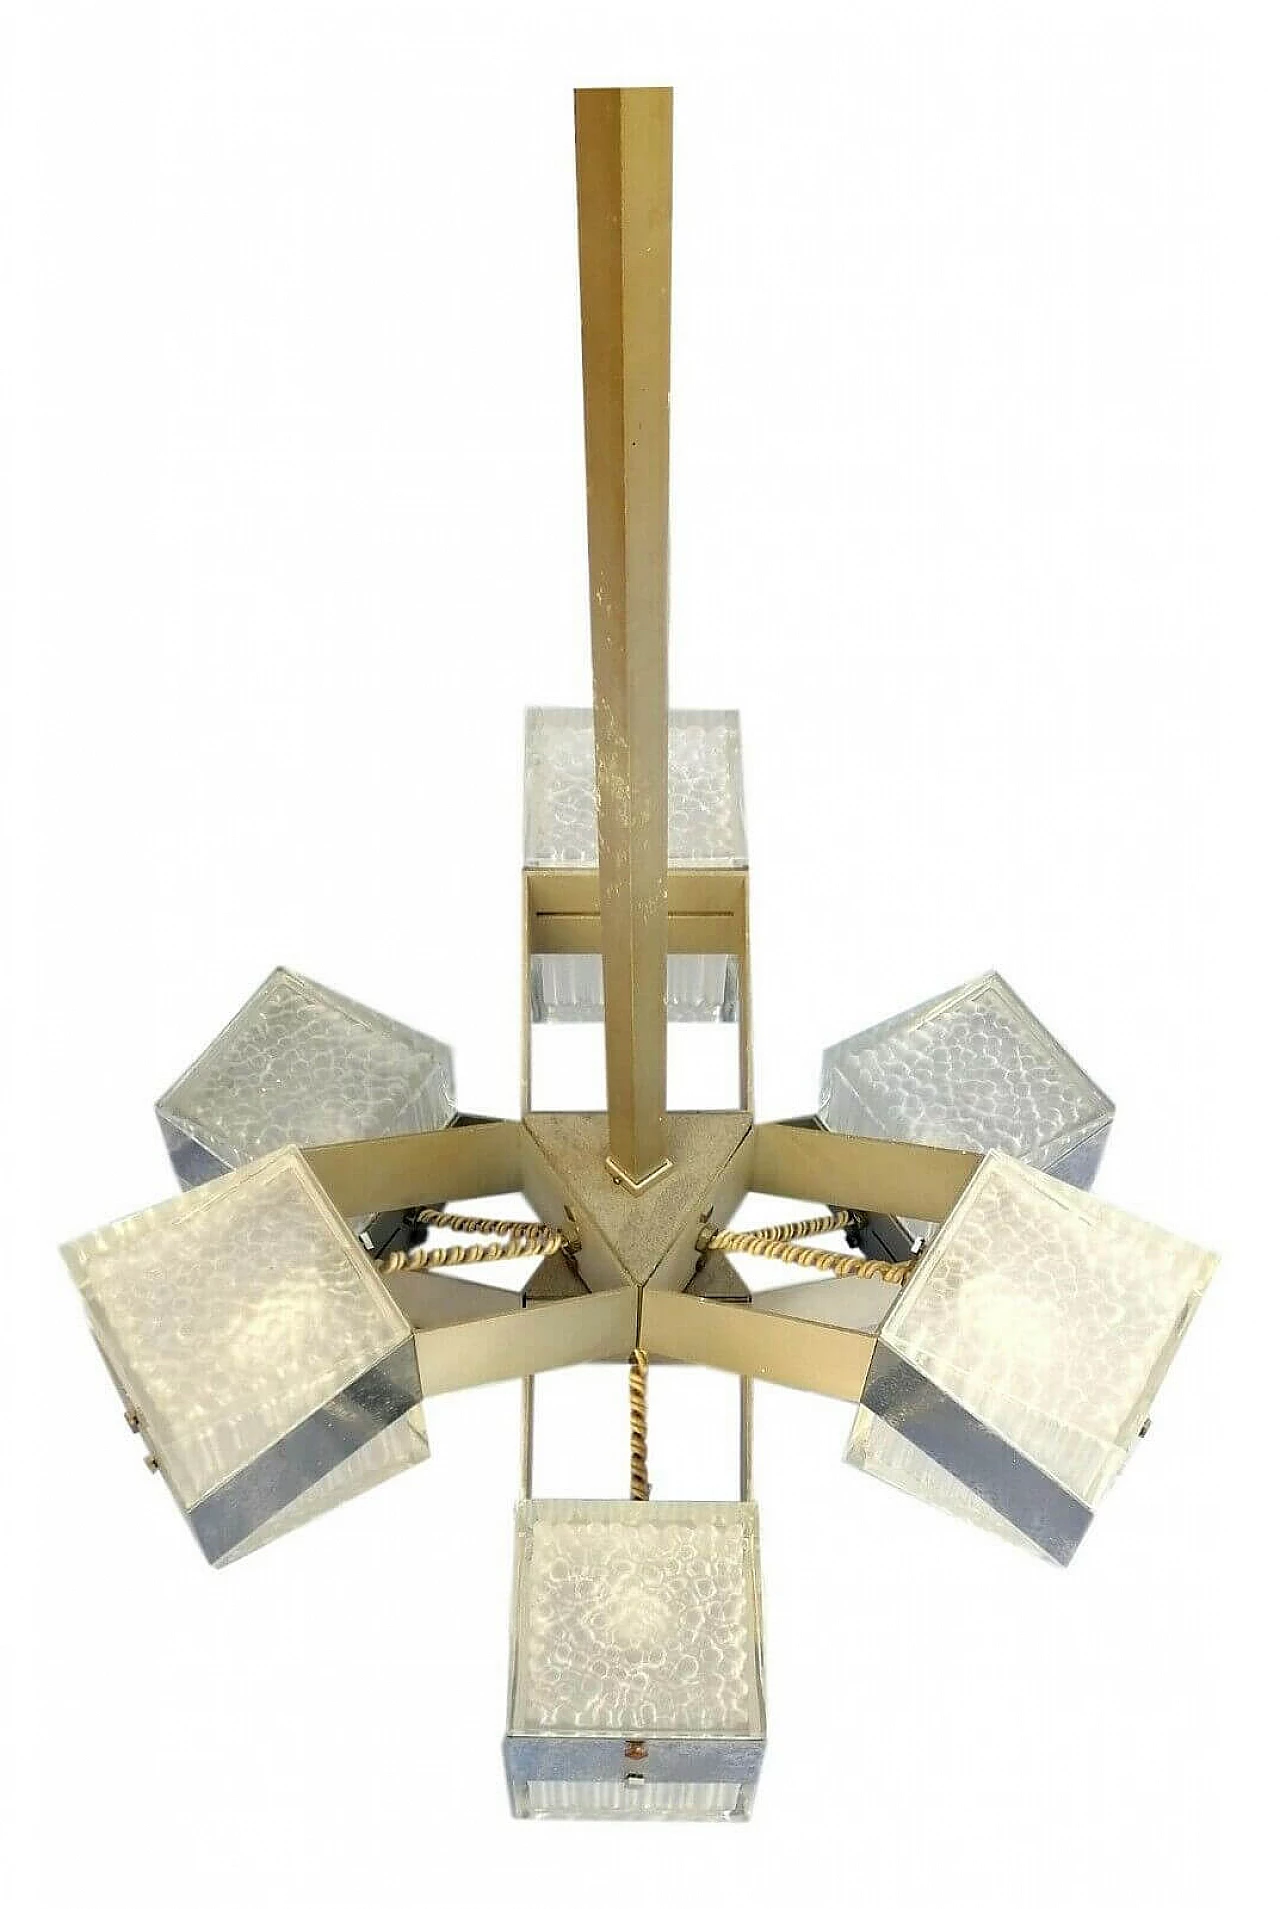 Six-light chandelier manufactured by Stilkronen, 70s 1169442